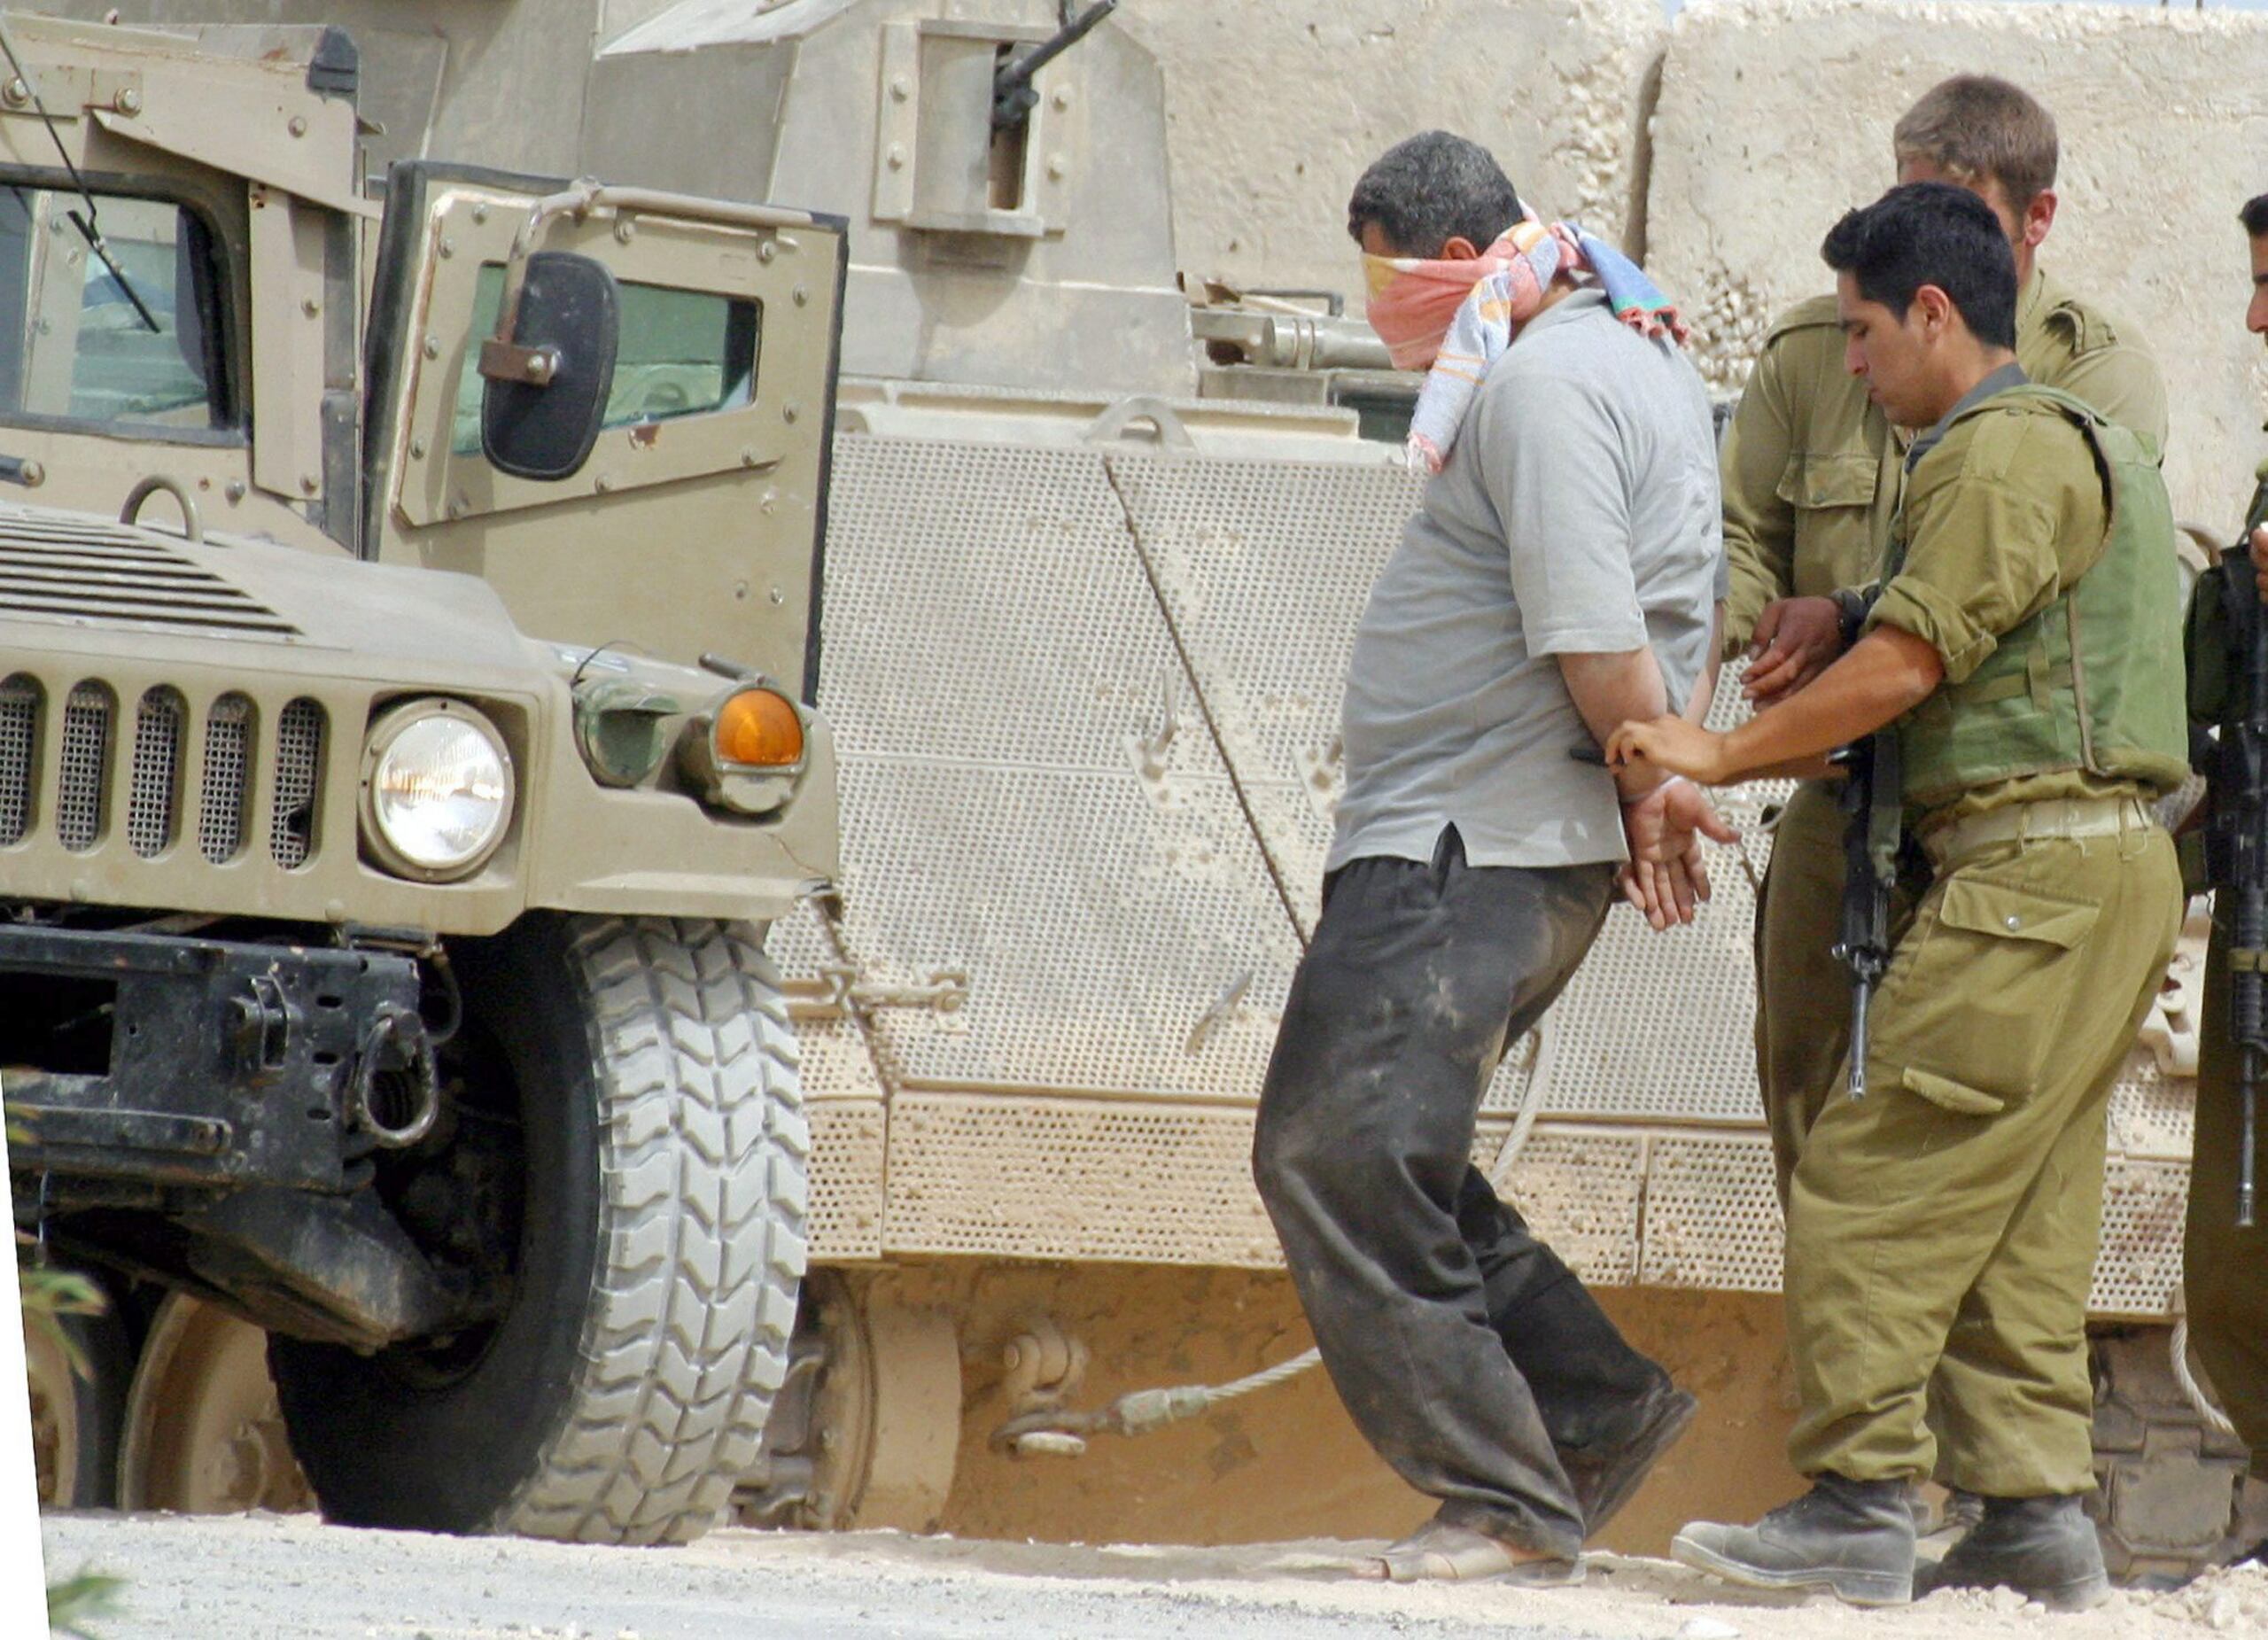 Casi 35,000 gazatíes han muerto en siete meses de guerra. En la imagen de archivo, un residente palestino de Rafah detenido por soldados israelíes. (EPA/Rina Castelnuovo/ POOL)